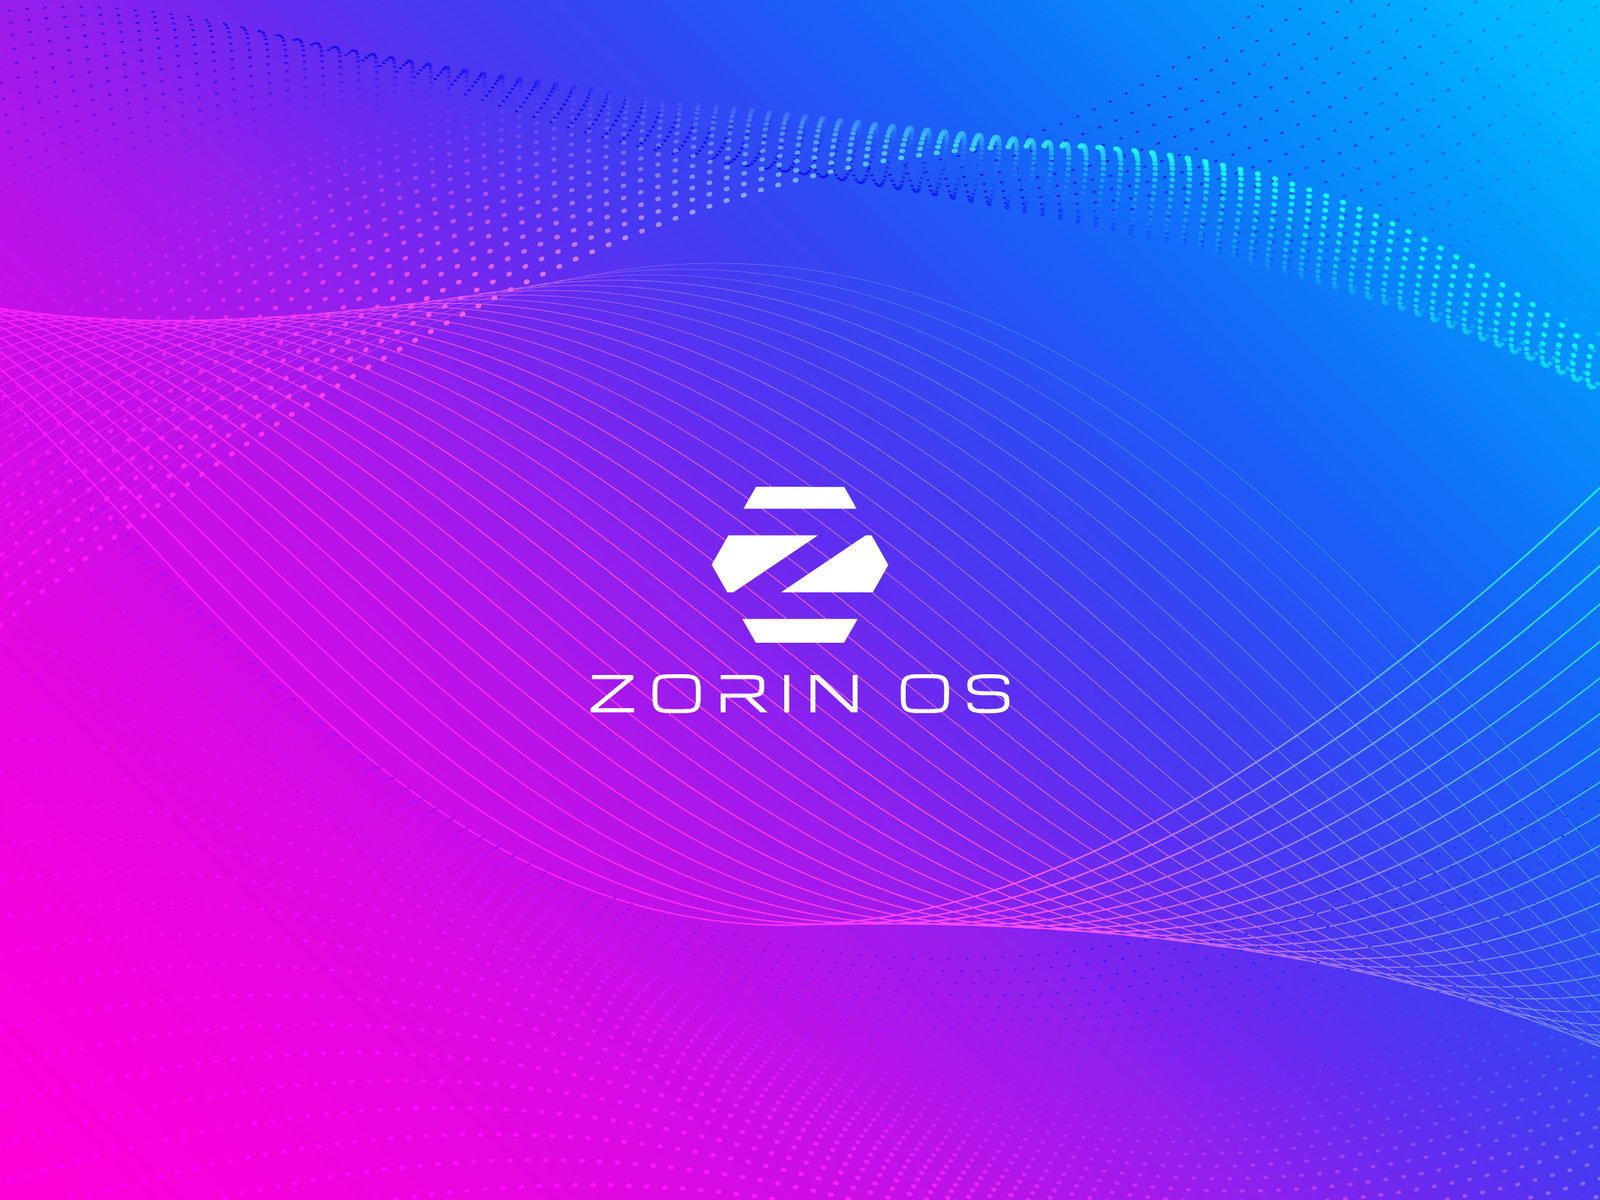 Zorin OS Wallpaper.